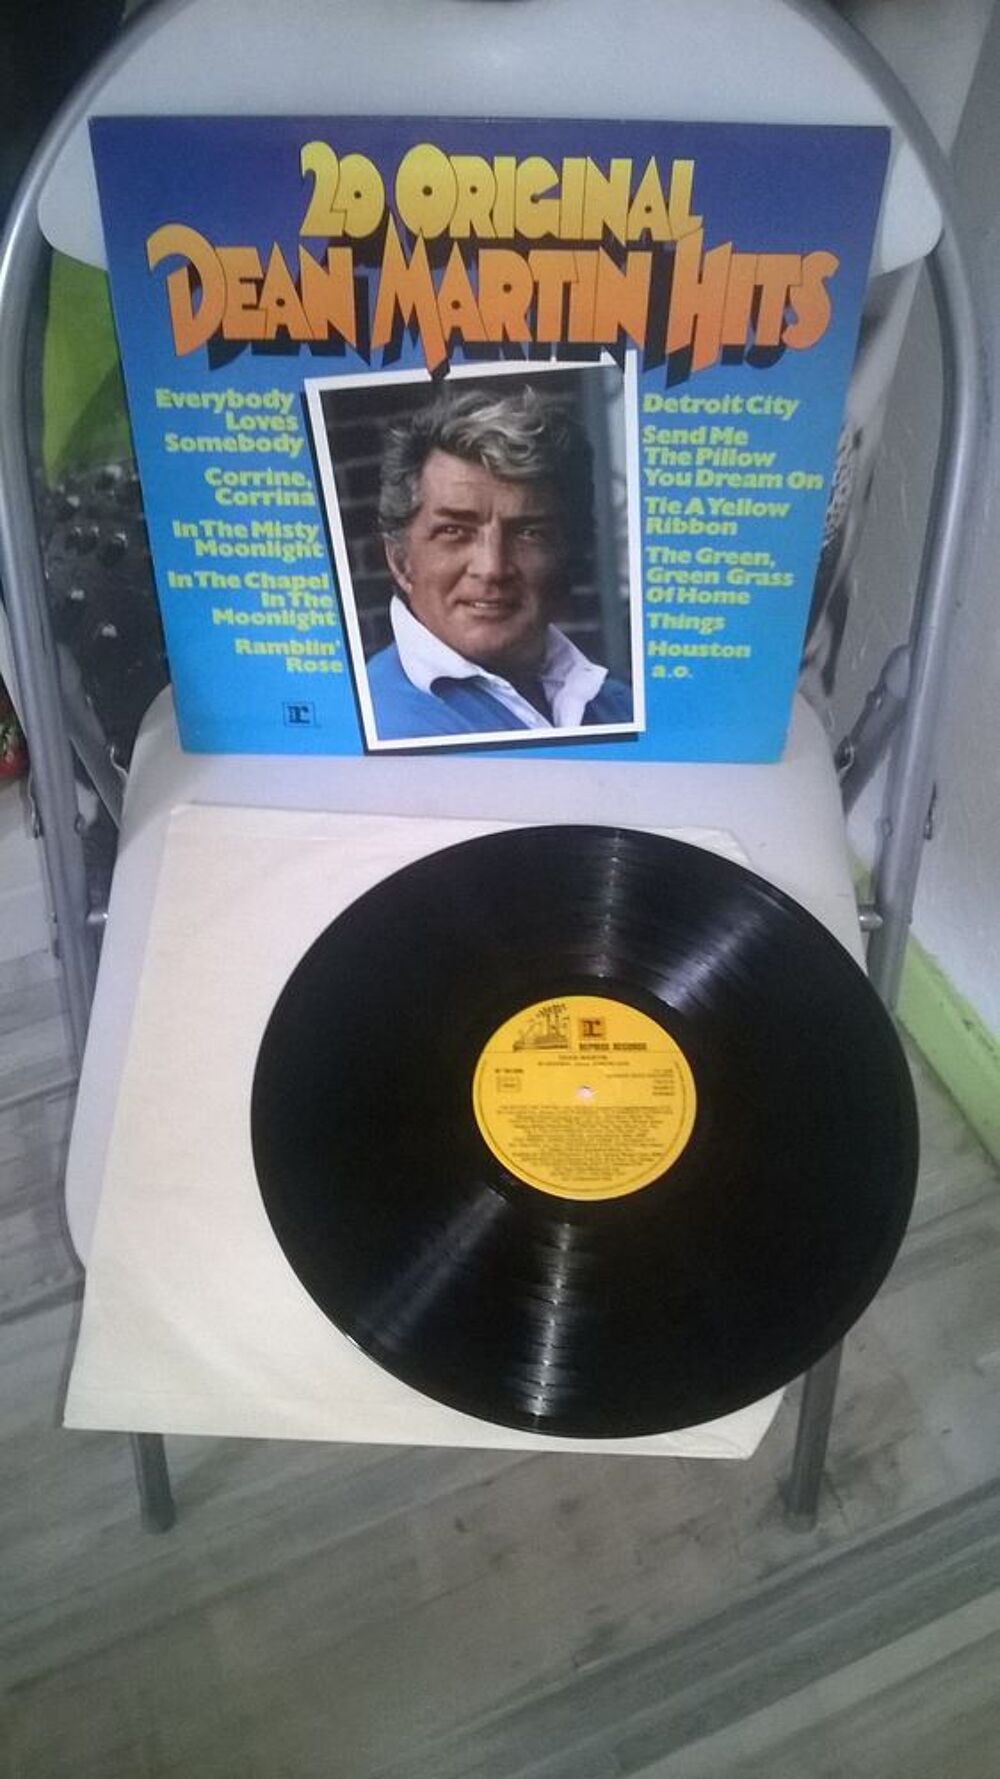 Vinyle Dean Martin
20 Original Hits
1976
Excellent etat
CD et vinyles